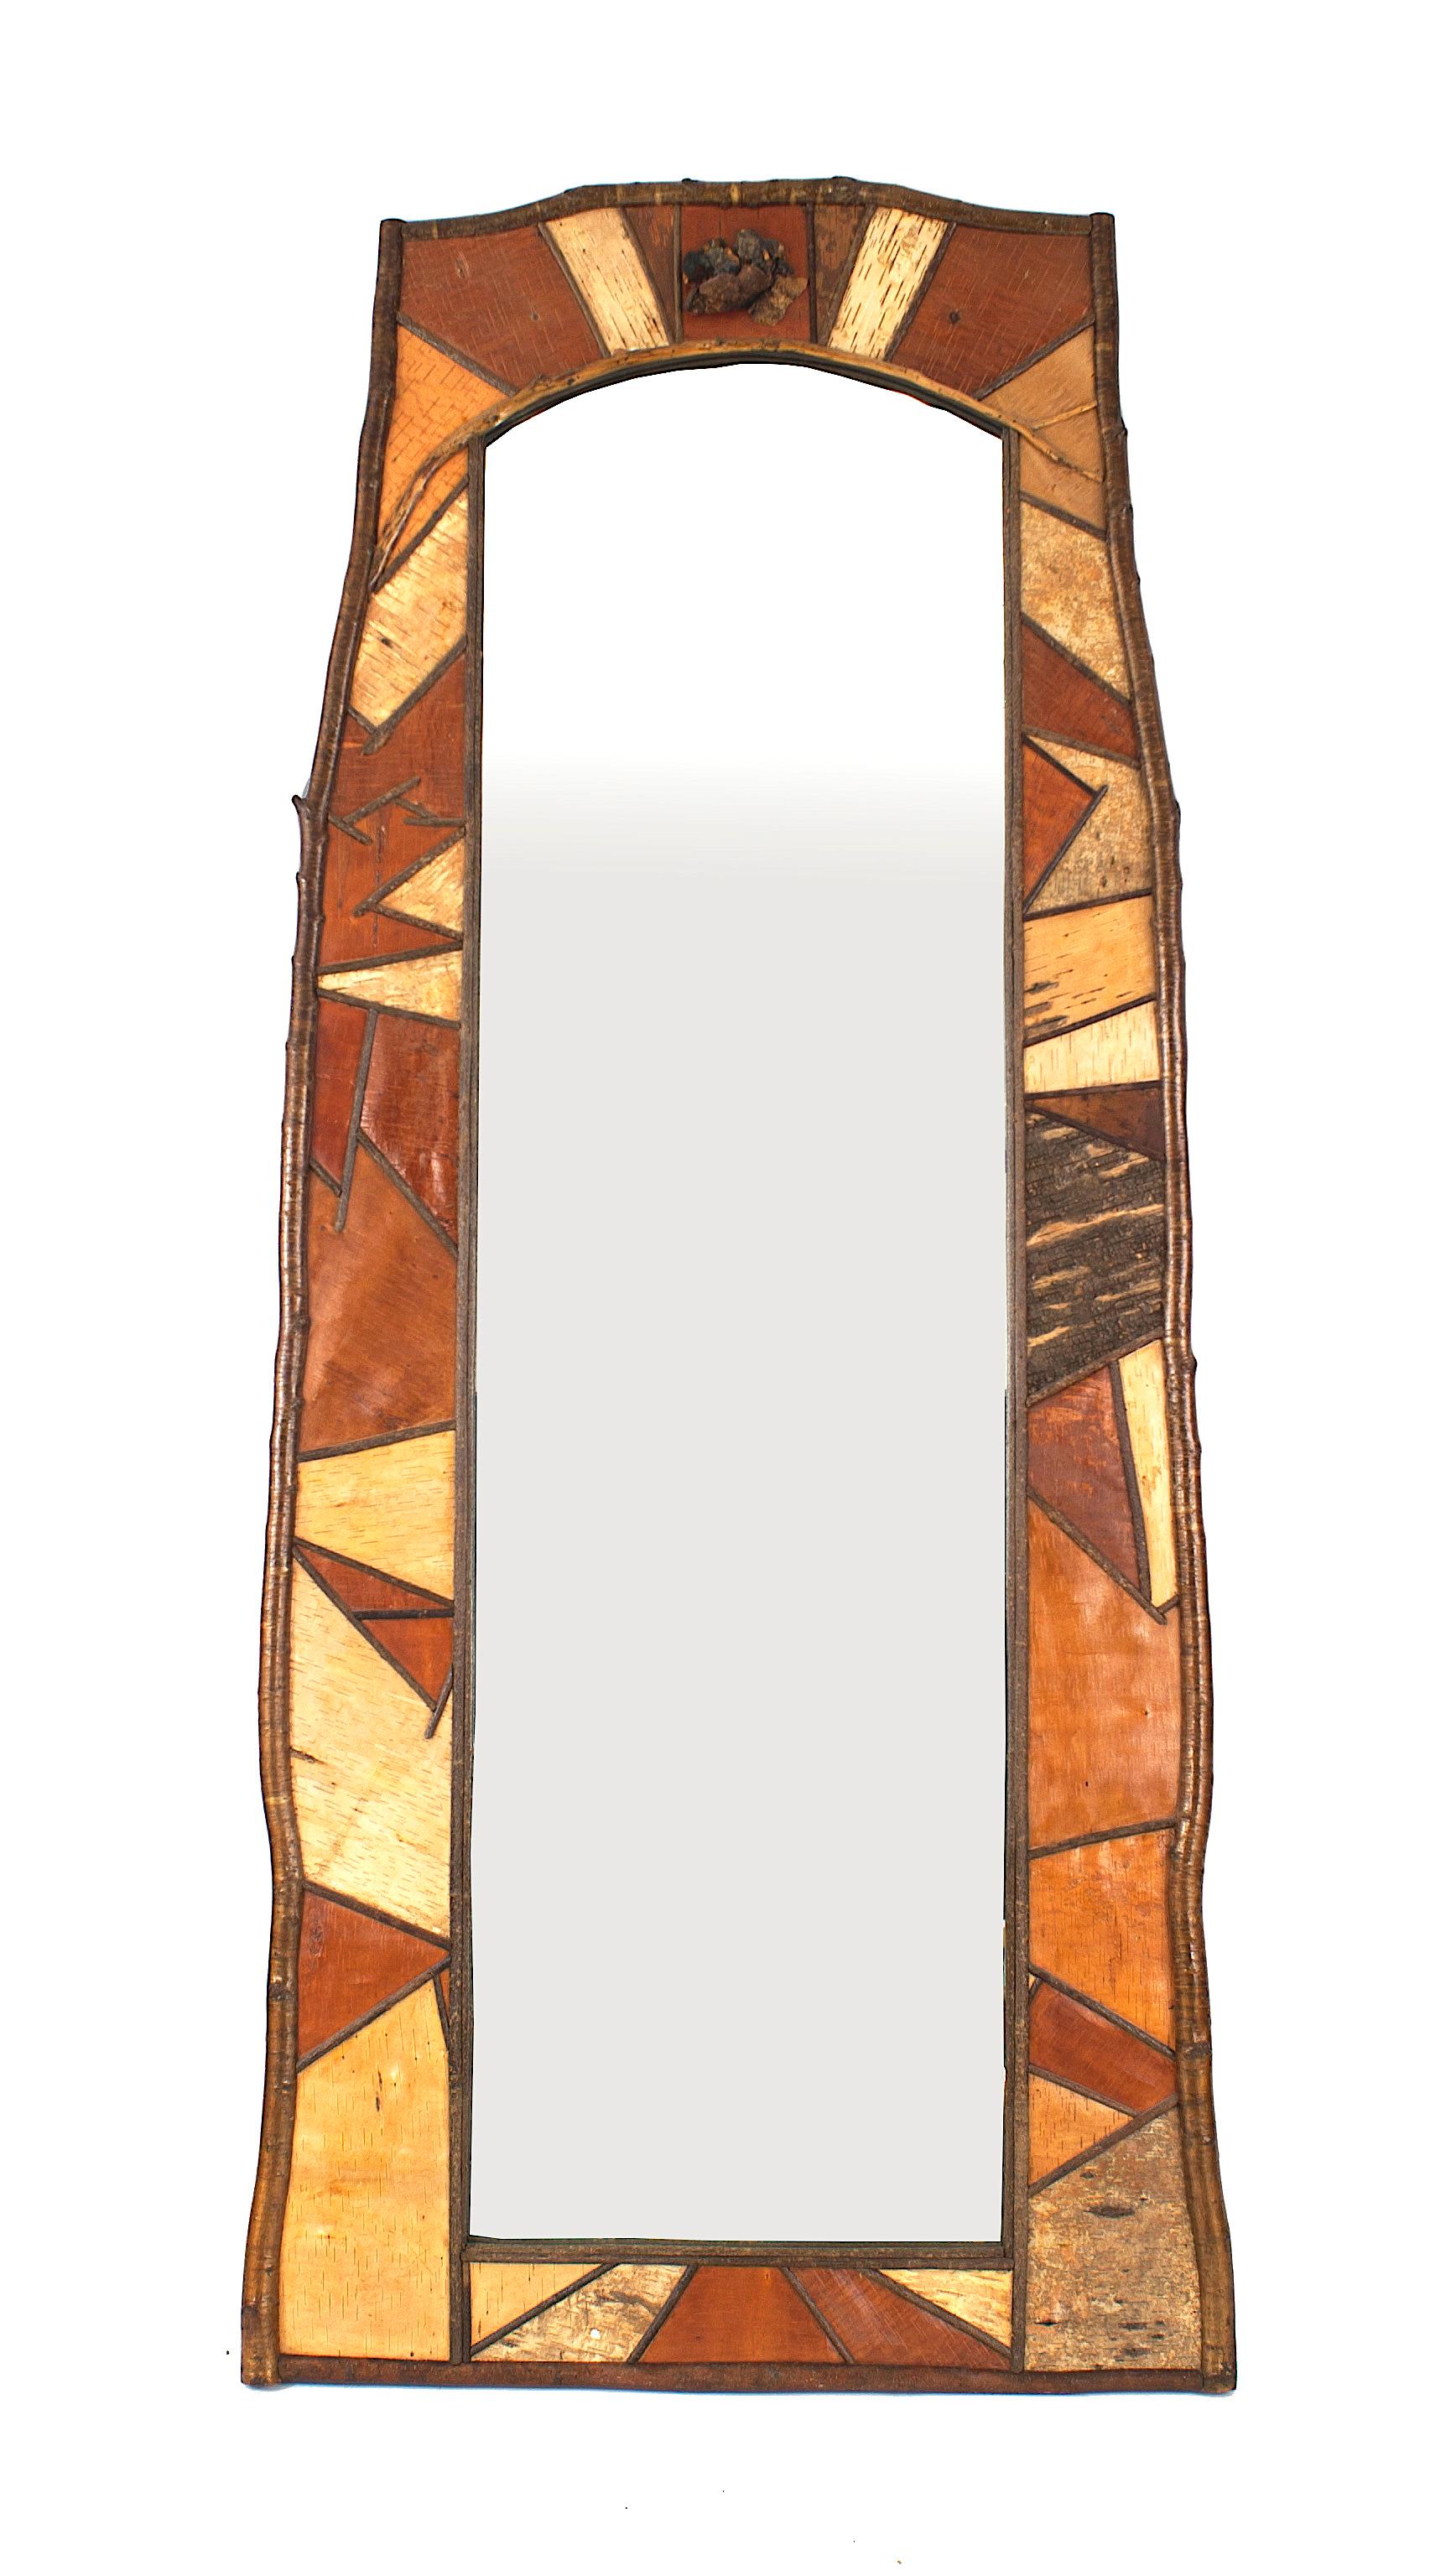 Rustikaler, rechteckiger, hoher, vertikaler Adirondack-Wandspiegel (spätes 20. Jahrhundert) mit hellbraunen, rostfarbenen, beigen und grauen, kantigen Holzfurnierplatten in einem Birkenrahmen.
